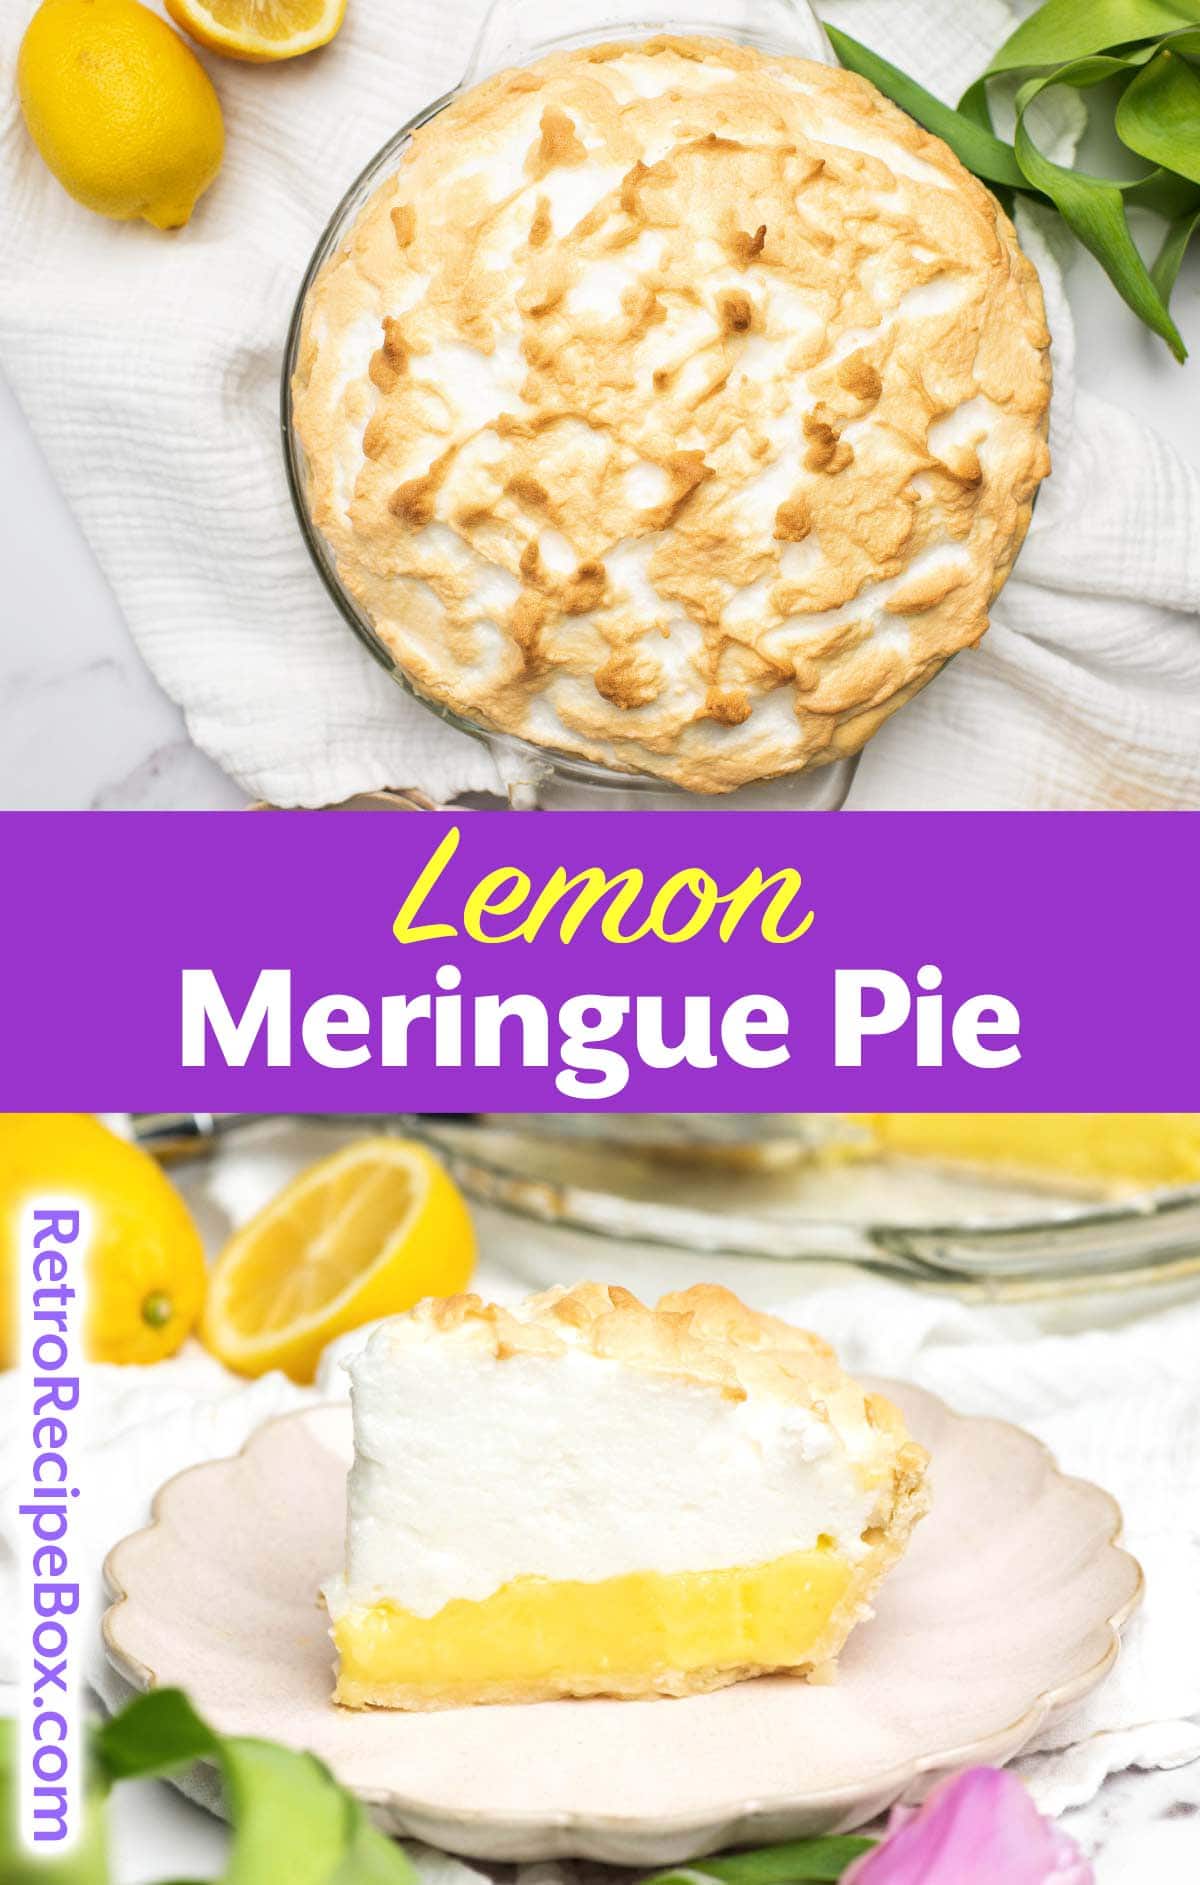 Lemon Meringue Pie - Retro Recipe Box